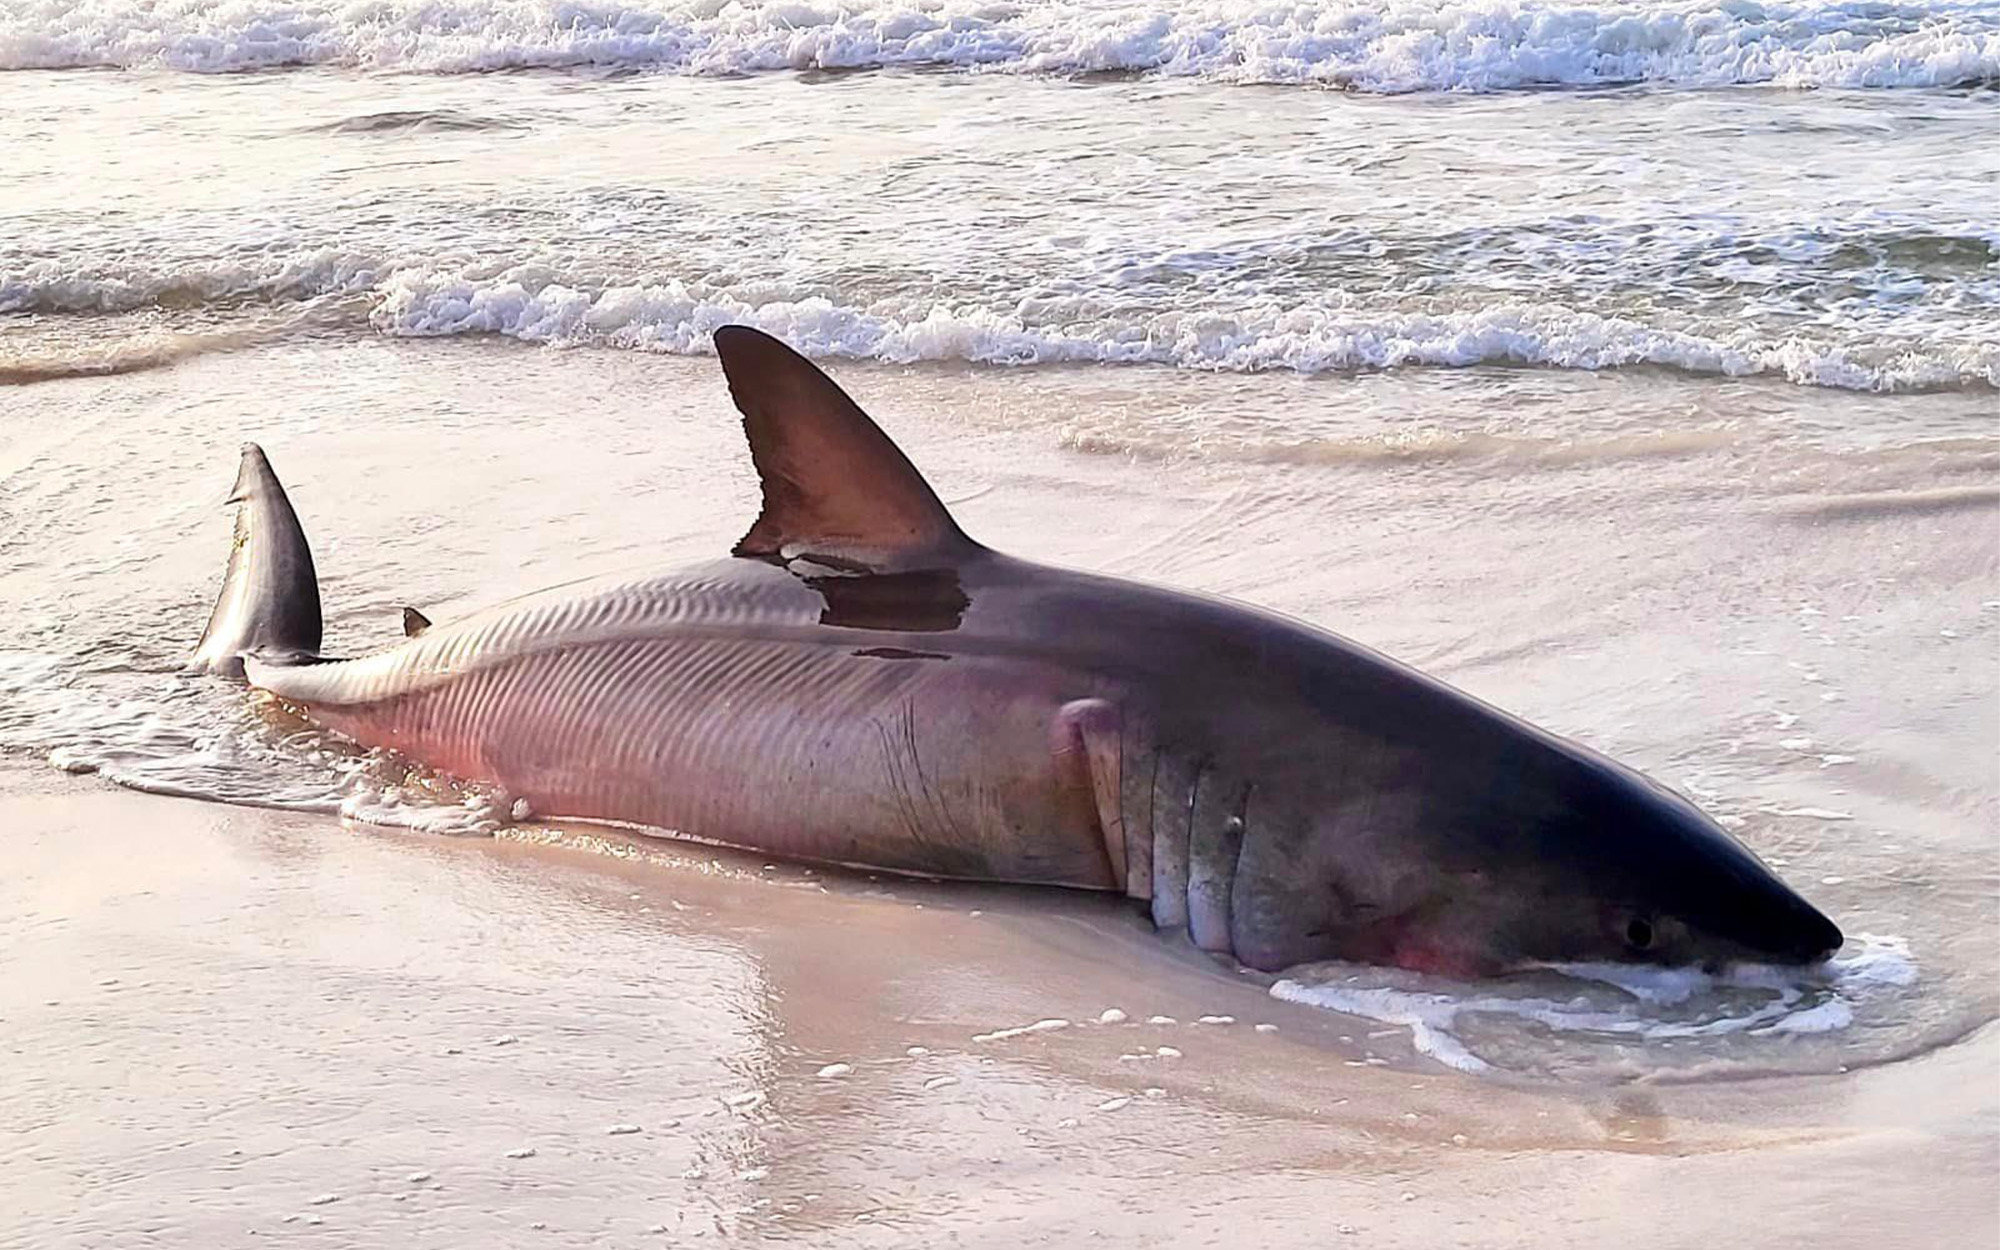 A dead great white shark on a Florida beach.